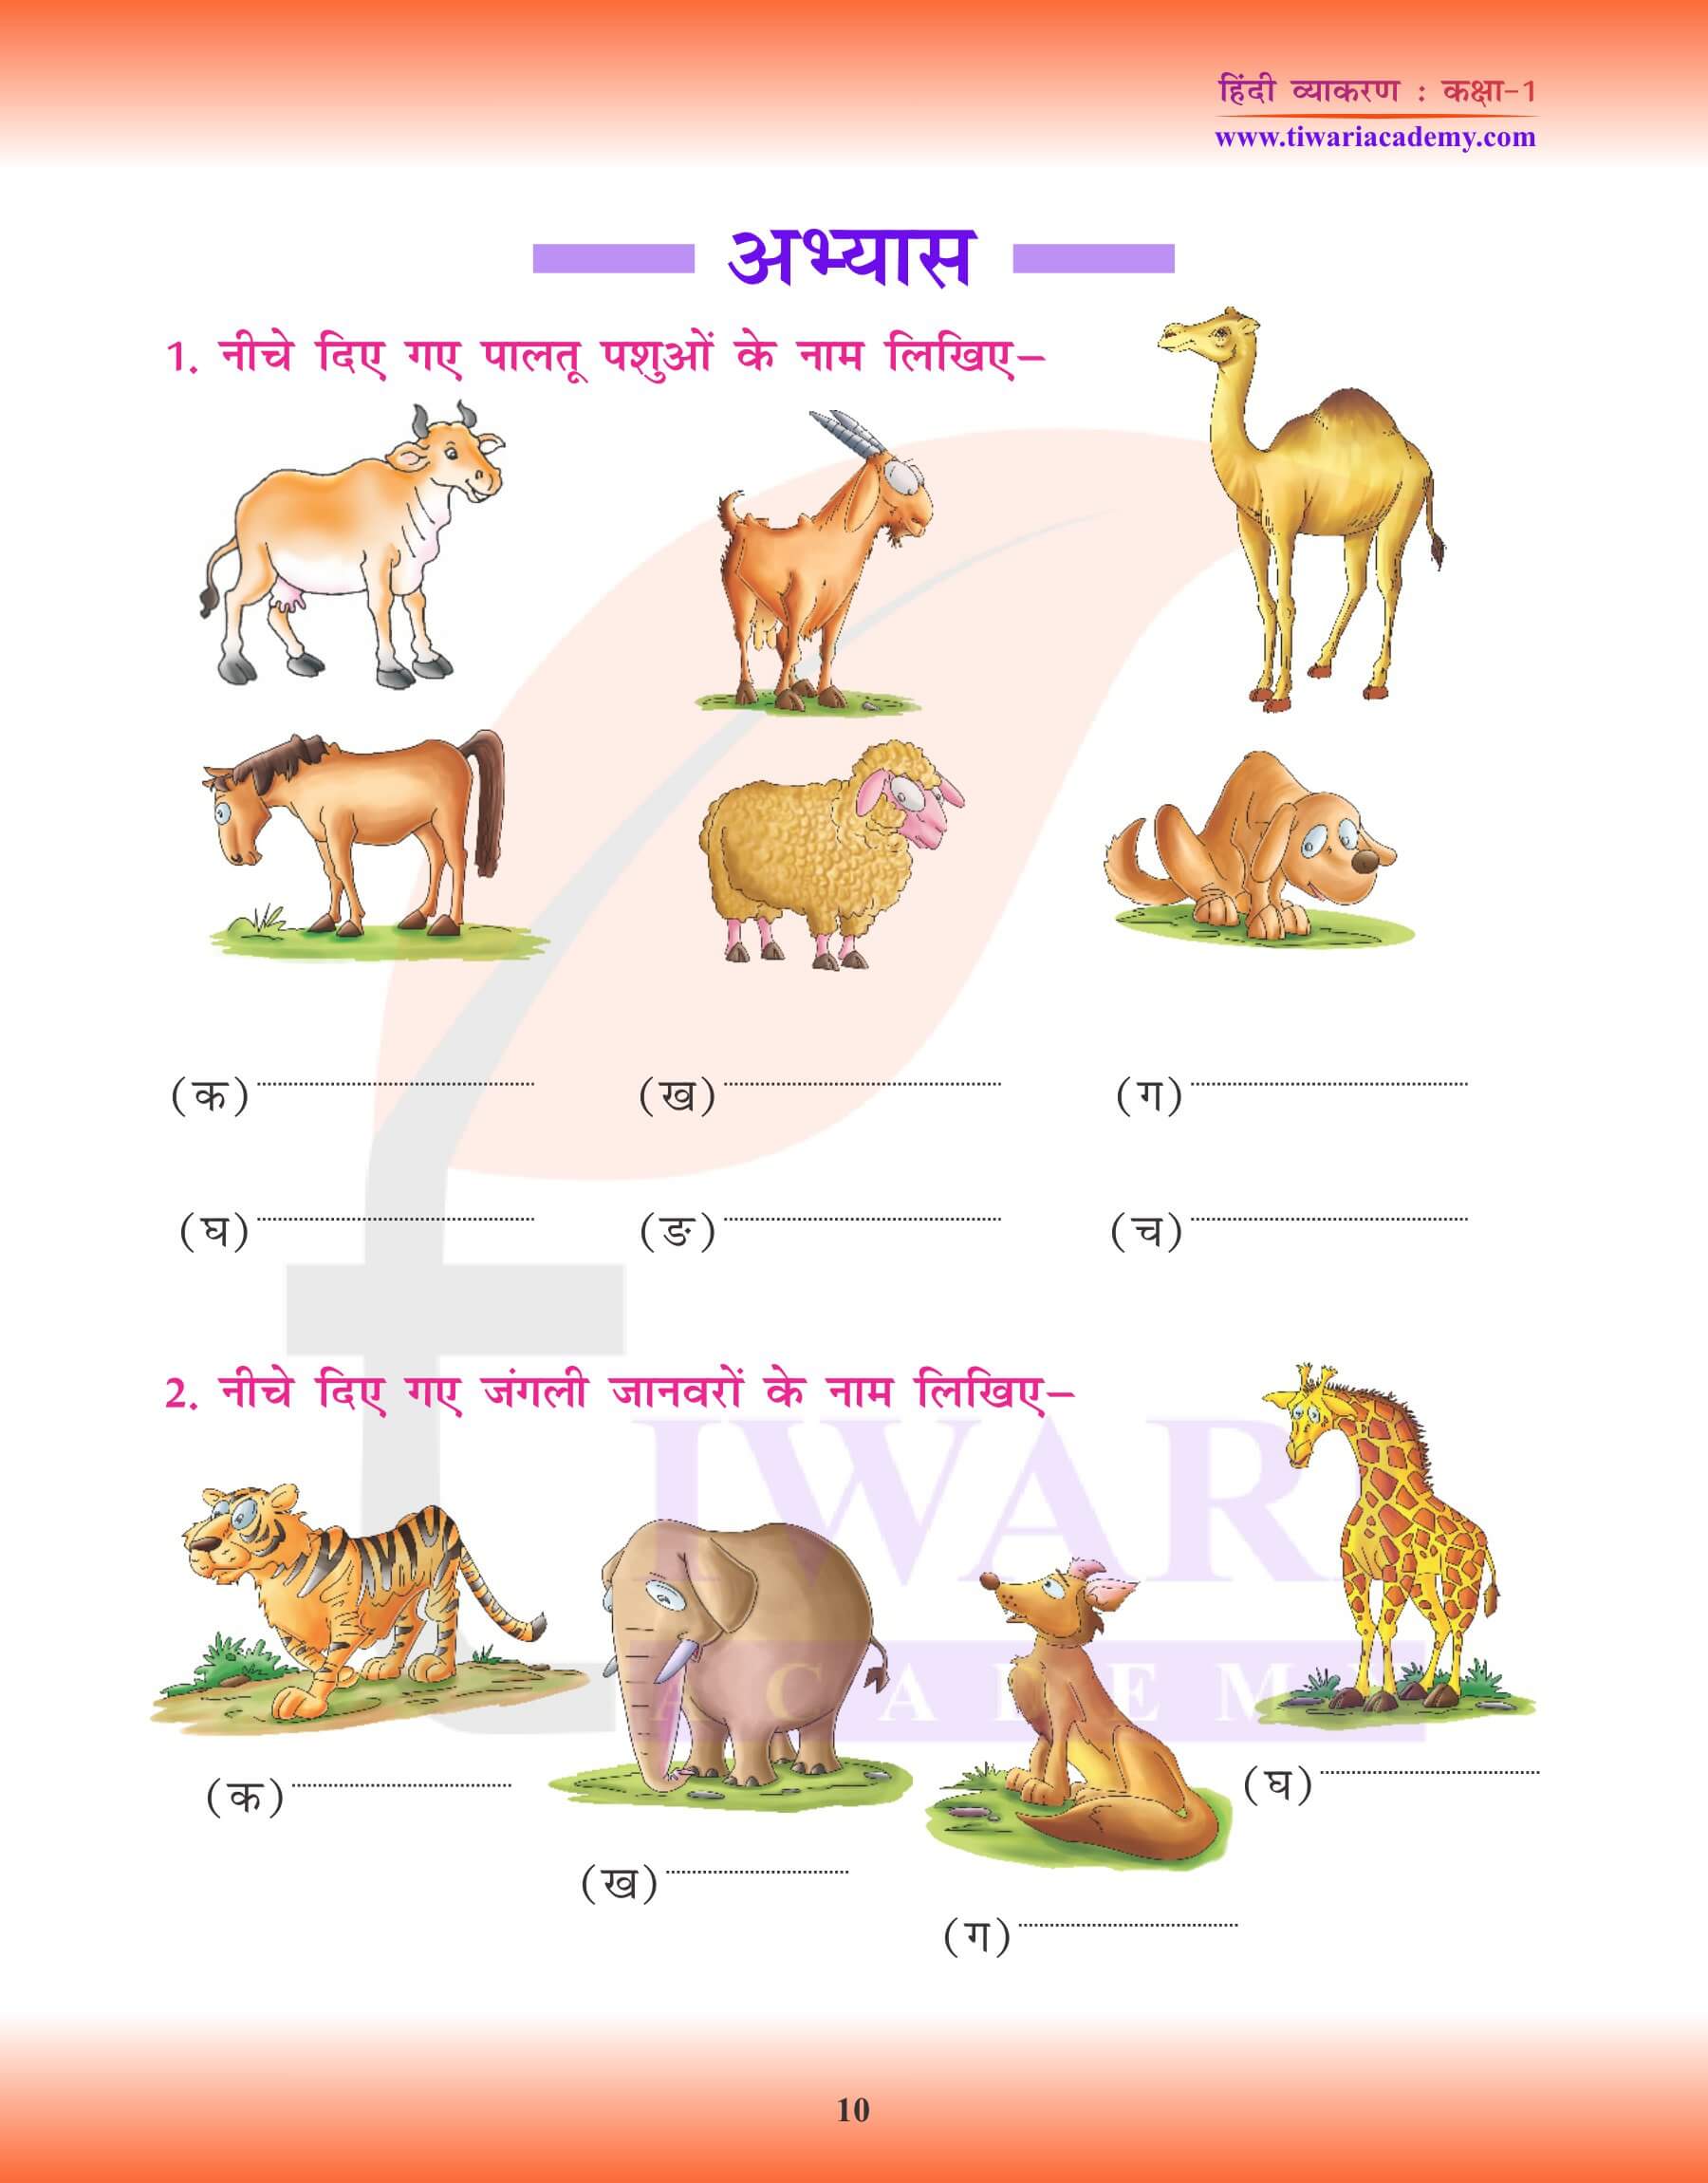 कक्षा 1 के लिए हिंदी व्याकरण में संज्ञा के लिए अभ्यास